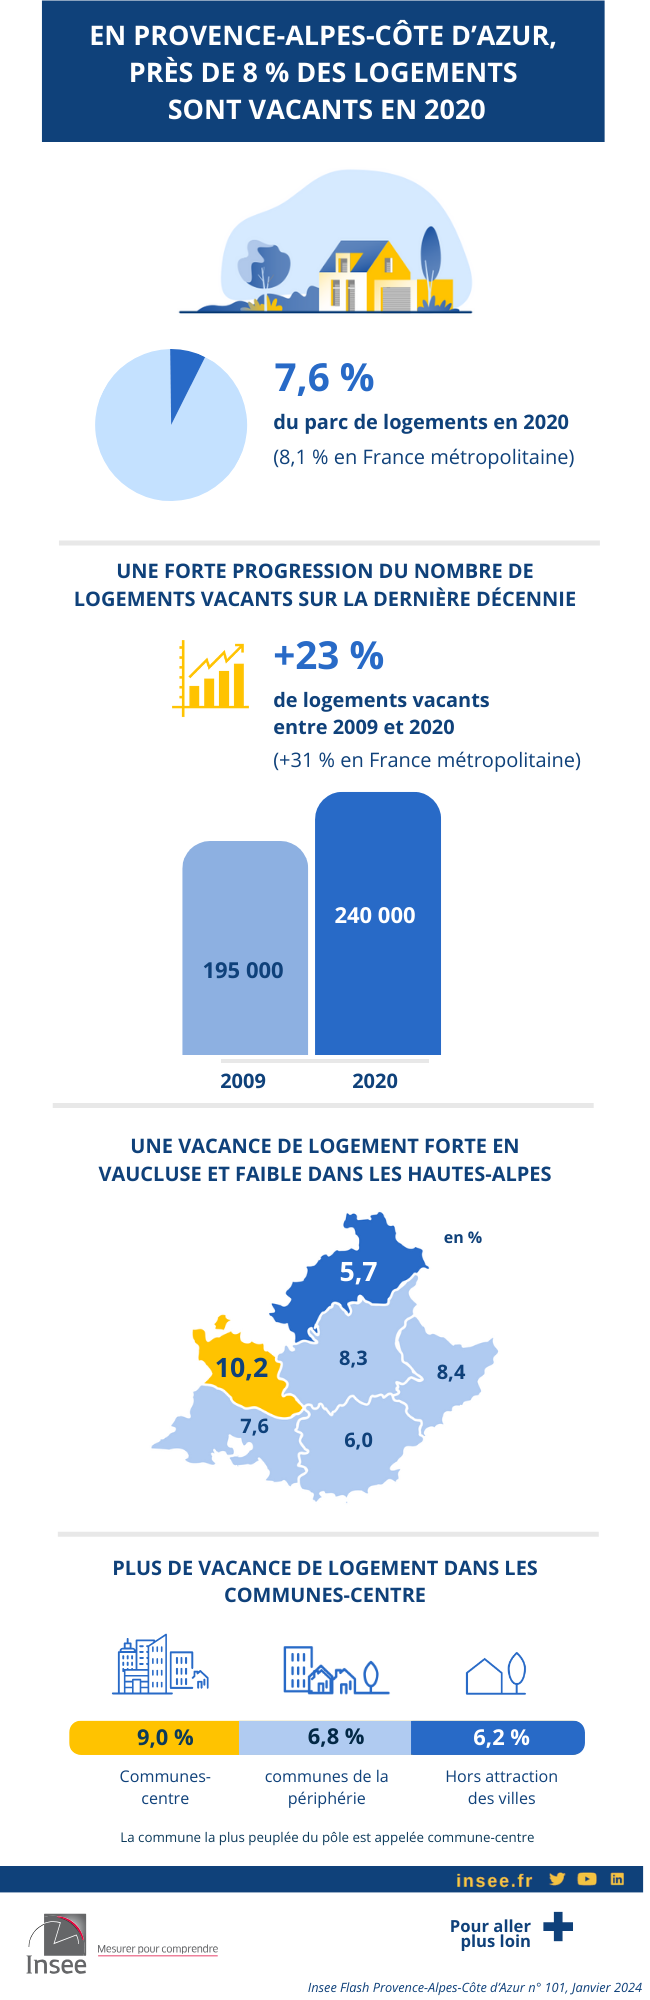 En Provence-Alpes-Côte d'Azur, en 2020, près de 8 % des logements sont vacants